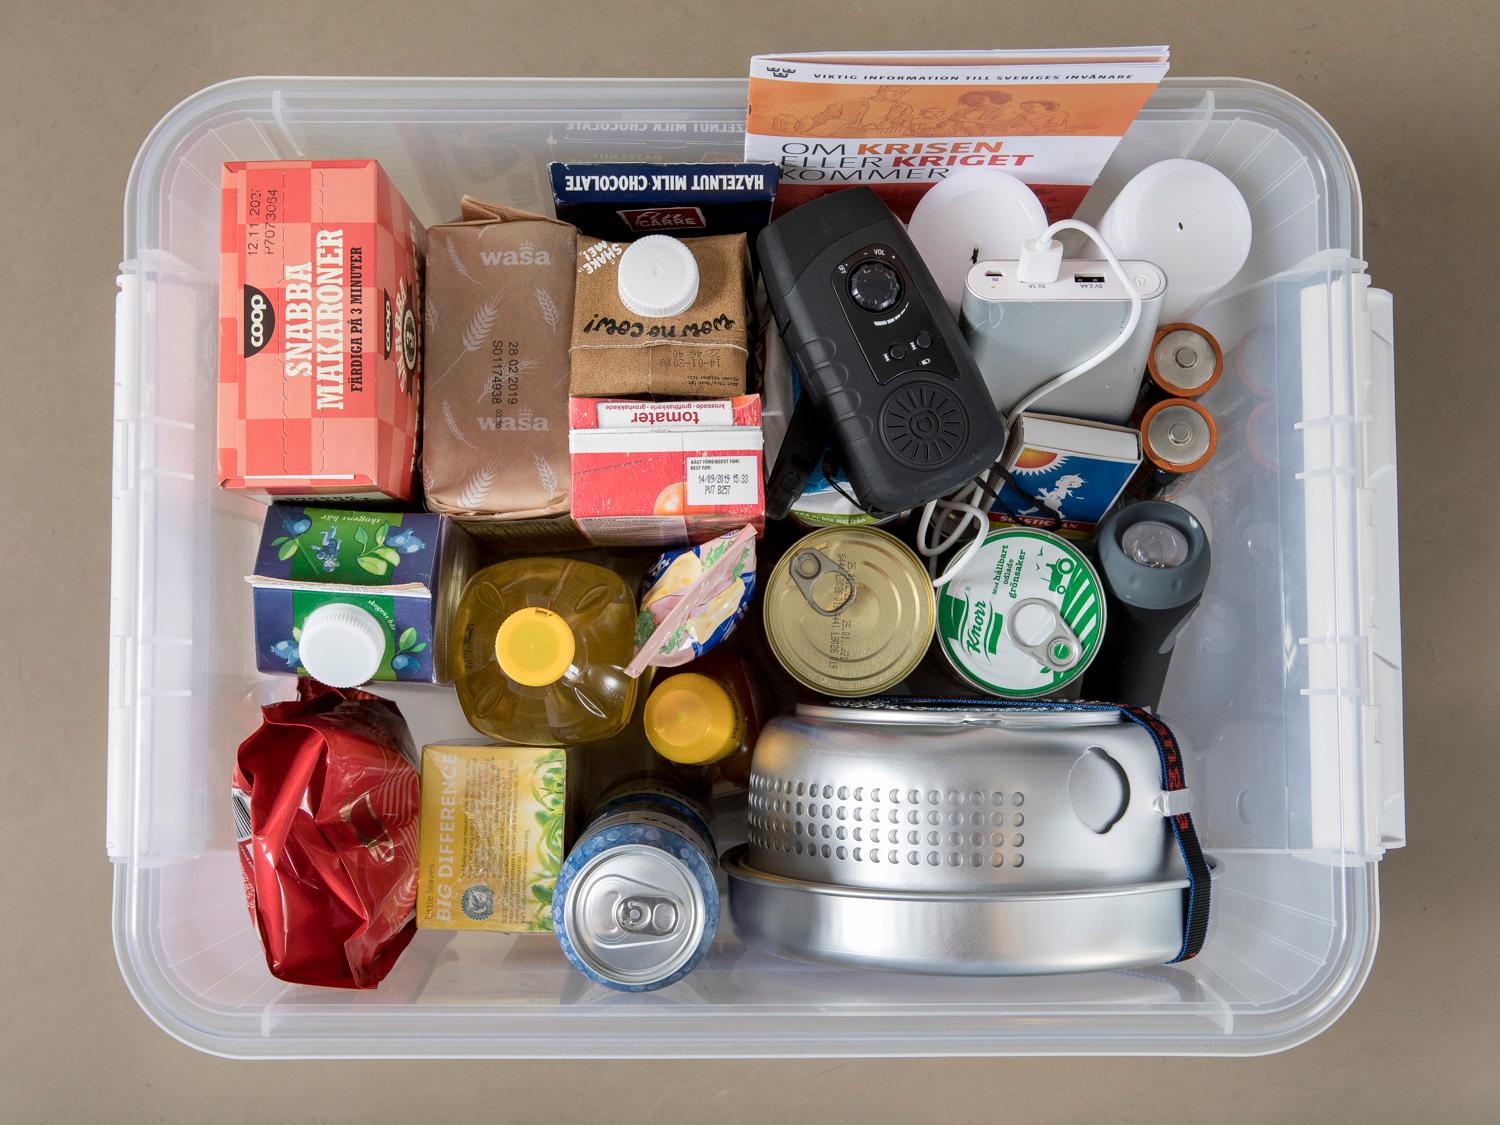 En krislåda som innehåller allt man behöver om krisen kommer. T ex stormkök, konserver, mat och vevradio